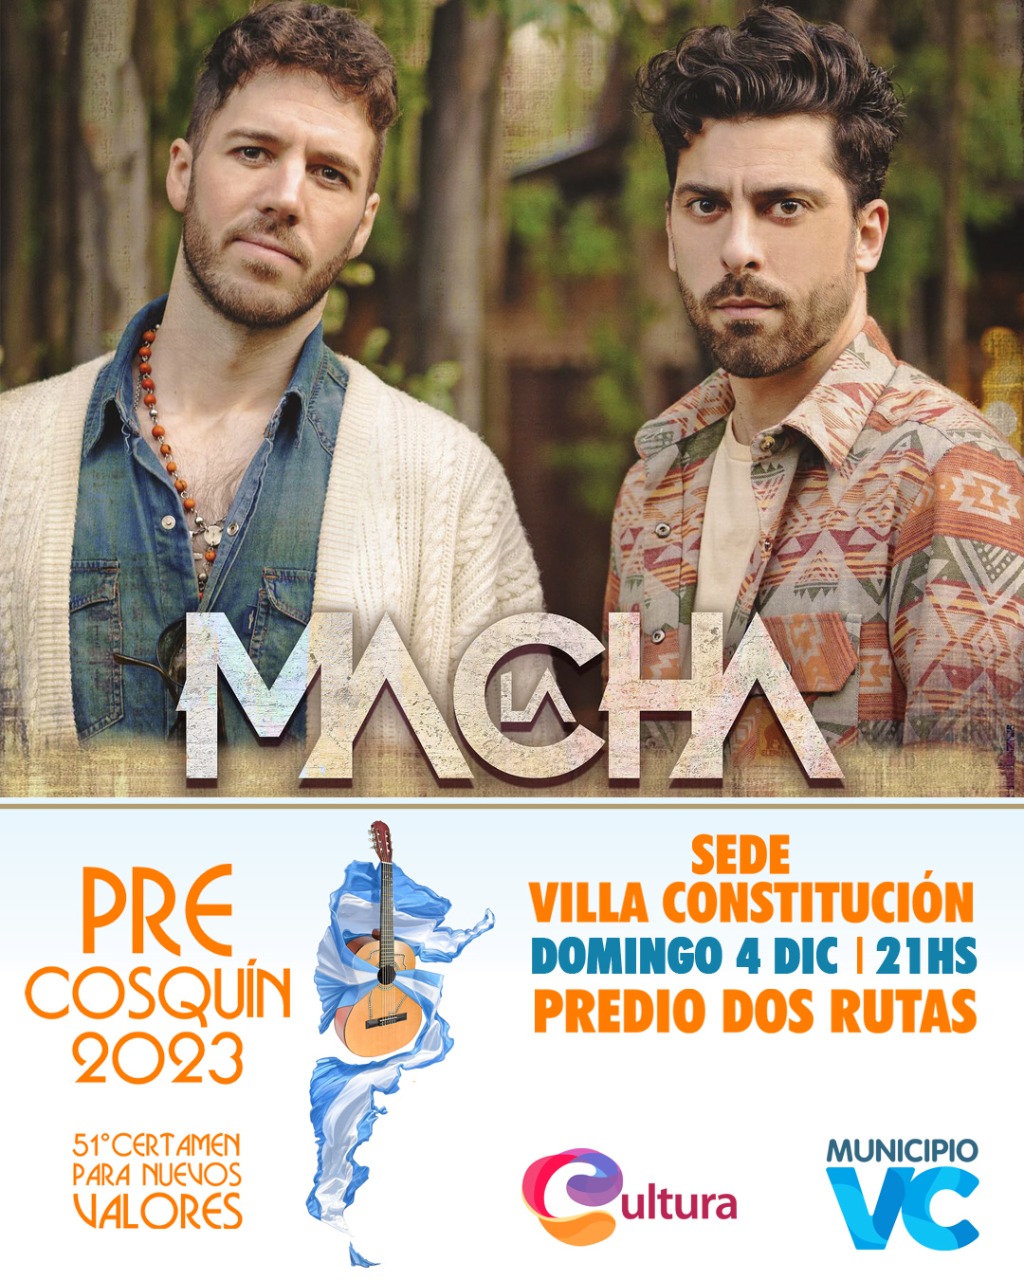 Precosquin | La Macha en Villa Constitución